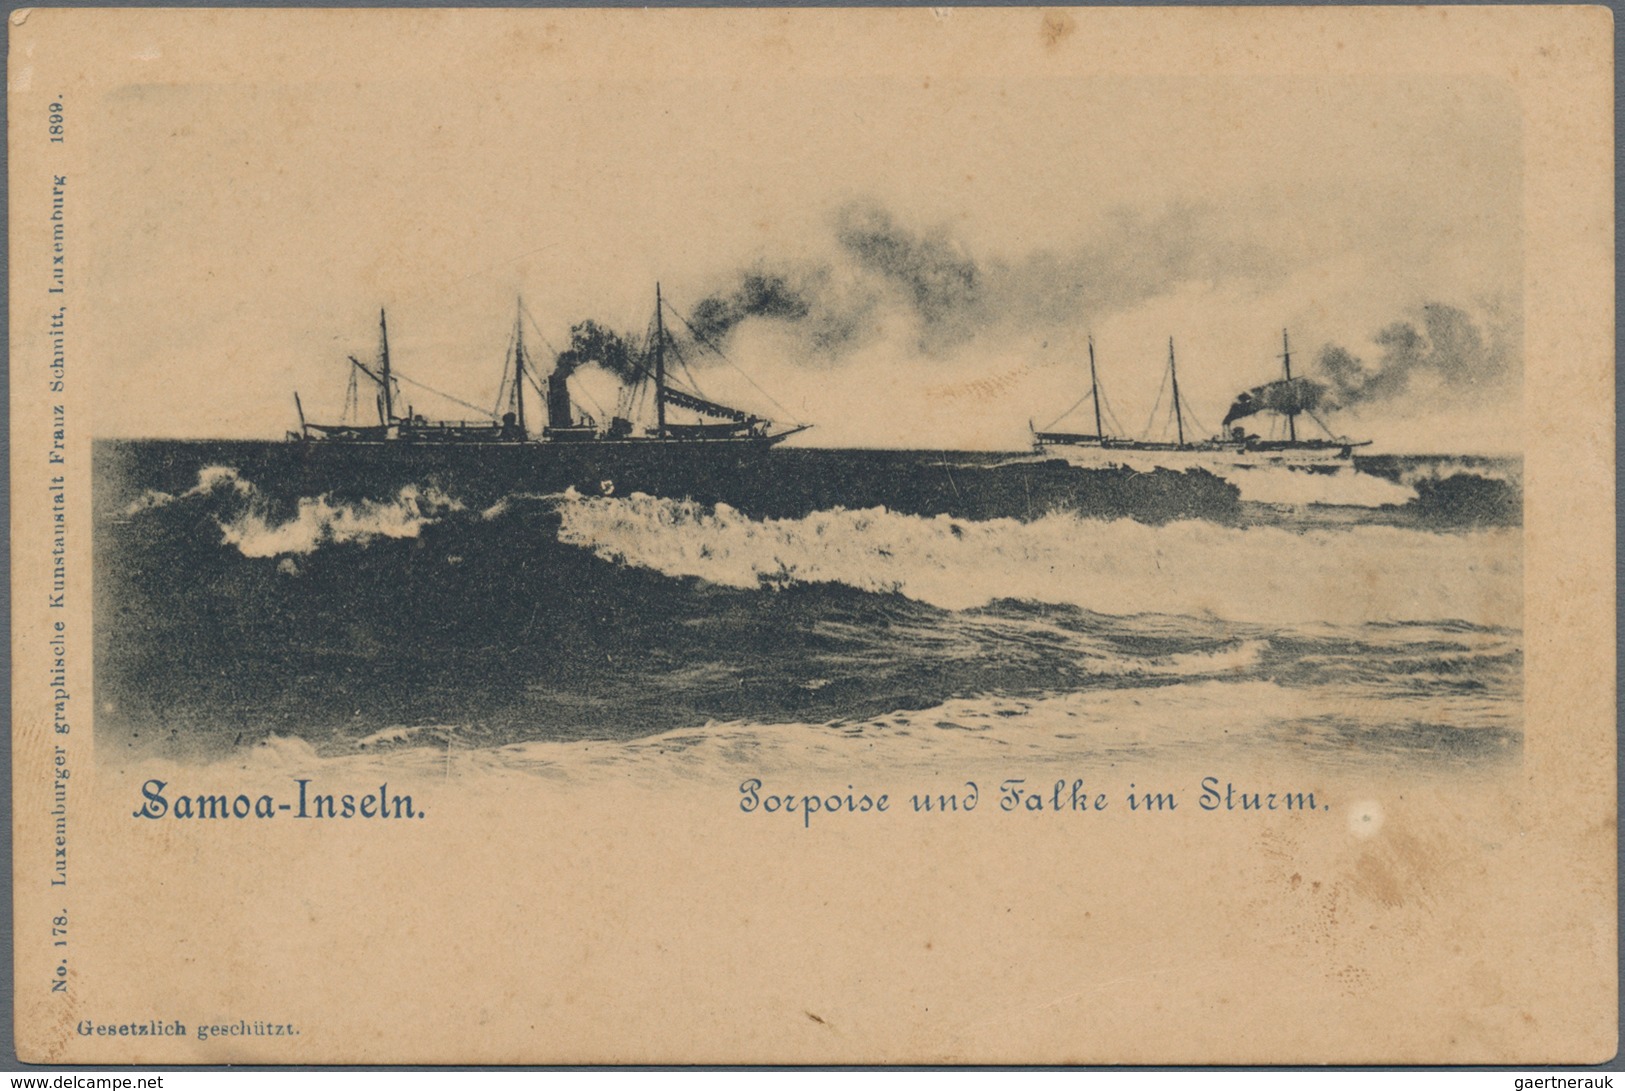 Deutsche Kolonien - Samoa - Besonderheiten: 1898/1899, drei GA-Belege (2 x GA-Kte "Nur für Marine-Sc